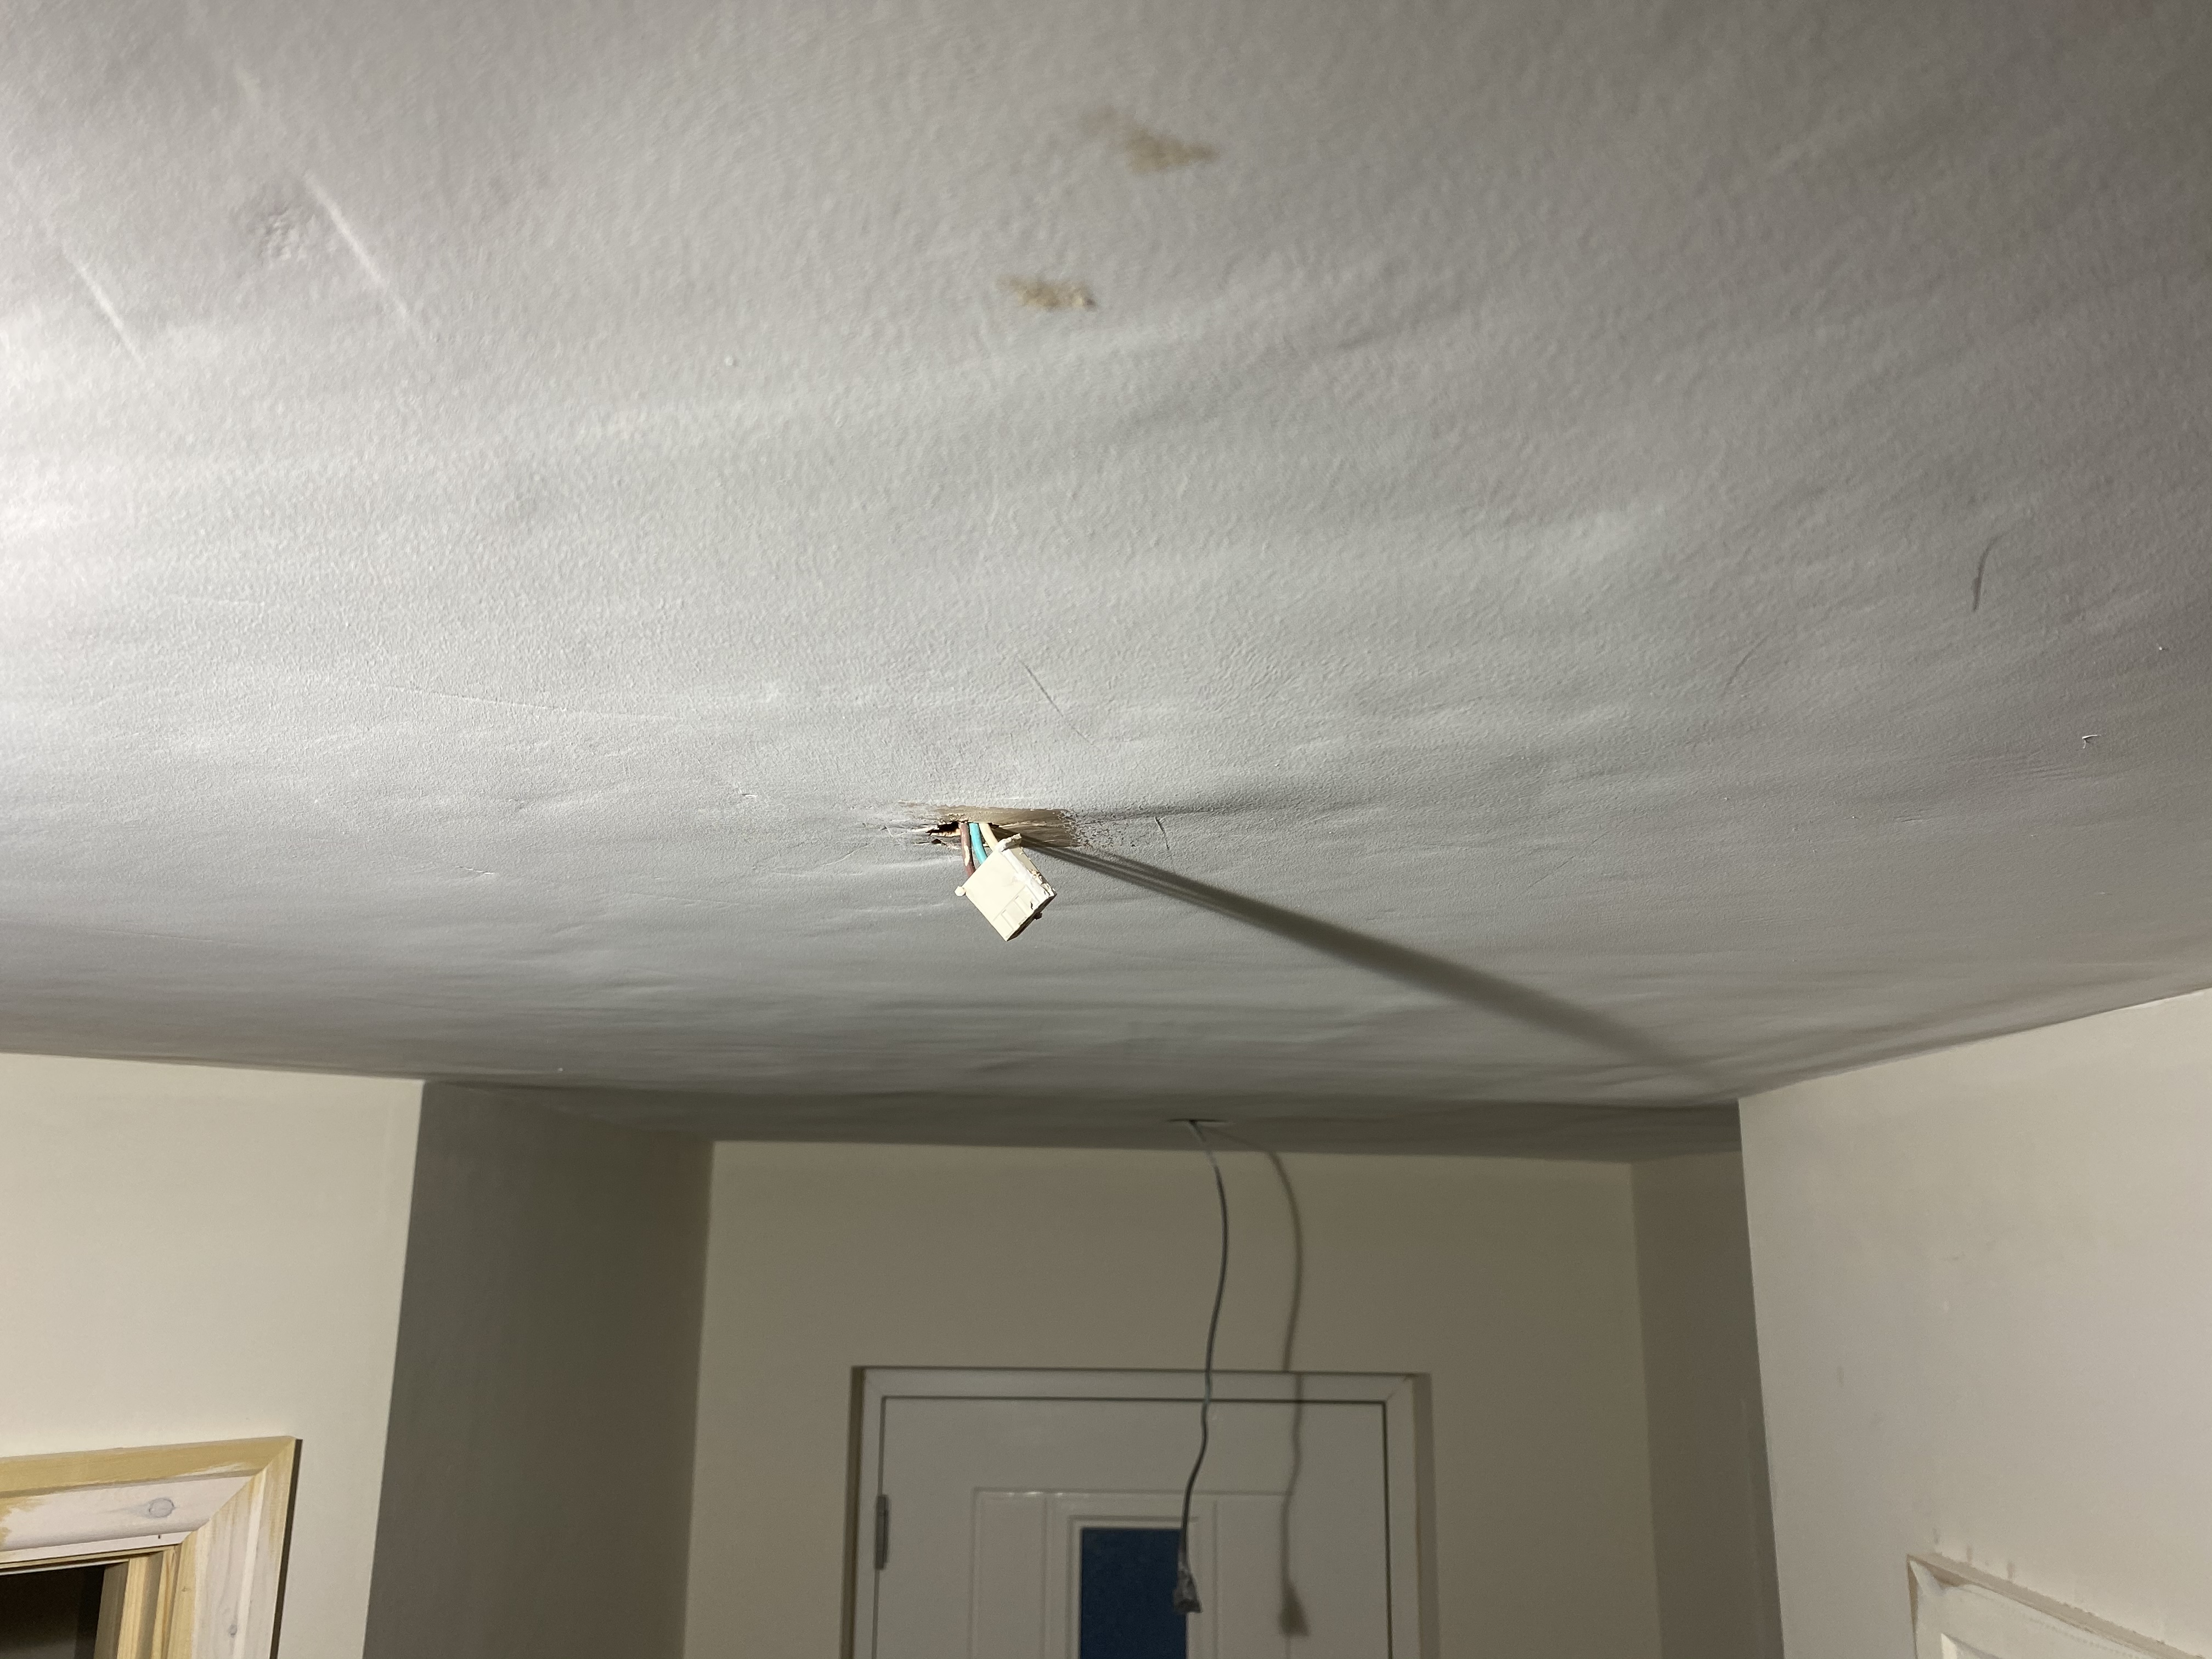 Advice needed please. Plastering on artex ceilings.